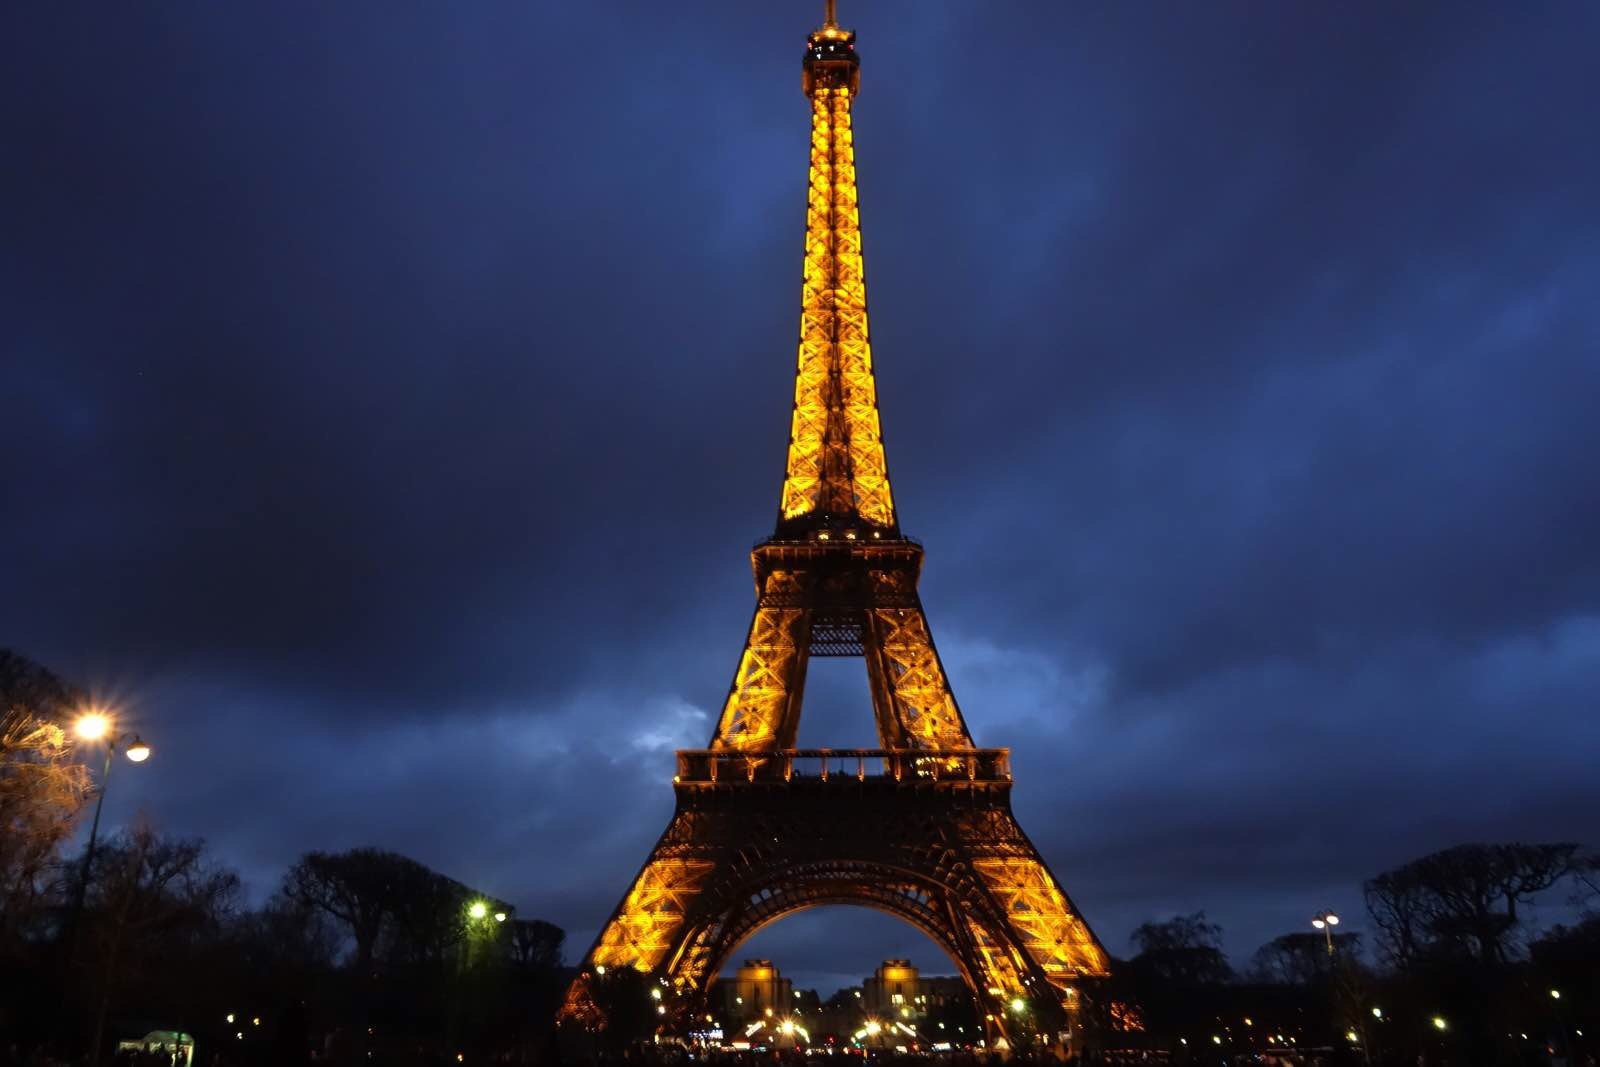 法国巴黎攻略 巴黎旅游十大免费景点 去巴黎旅游要多少钱 优游旅行网